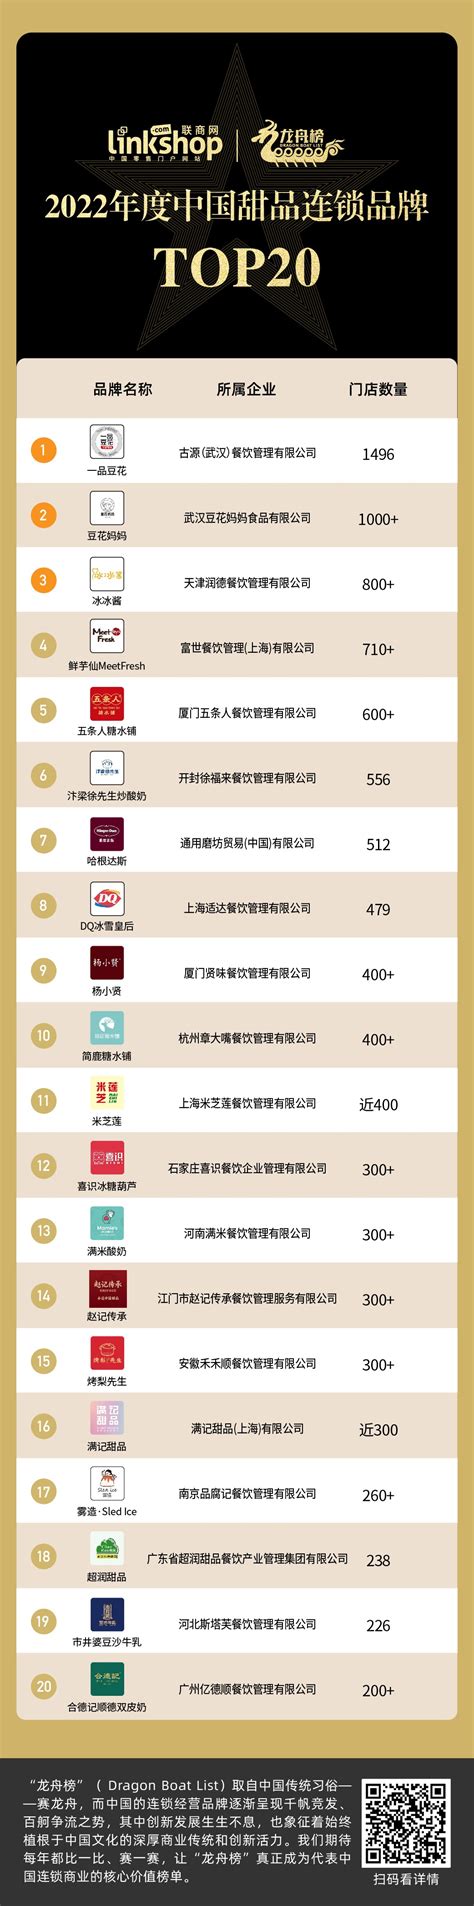 2022年度中国甜品连锁品牌TOP20_联商网